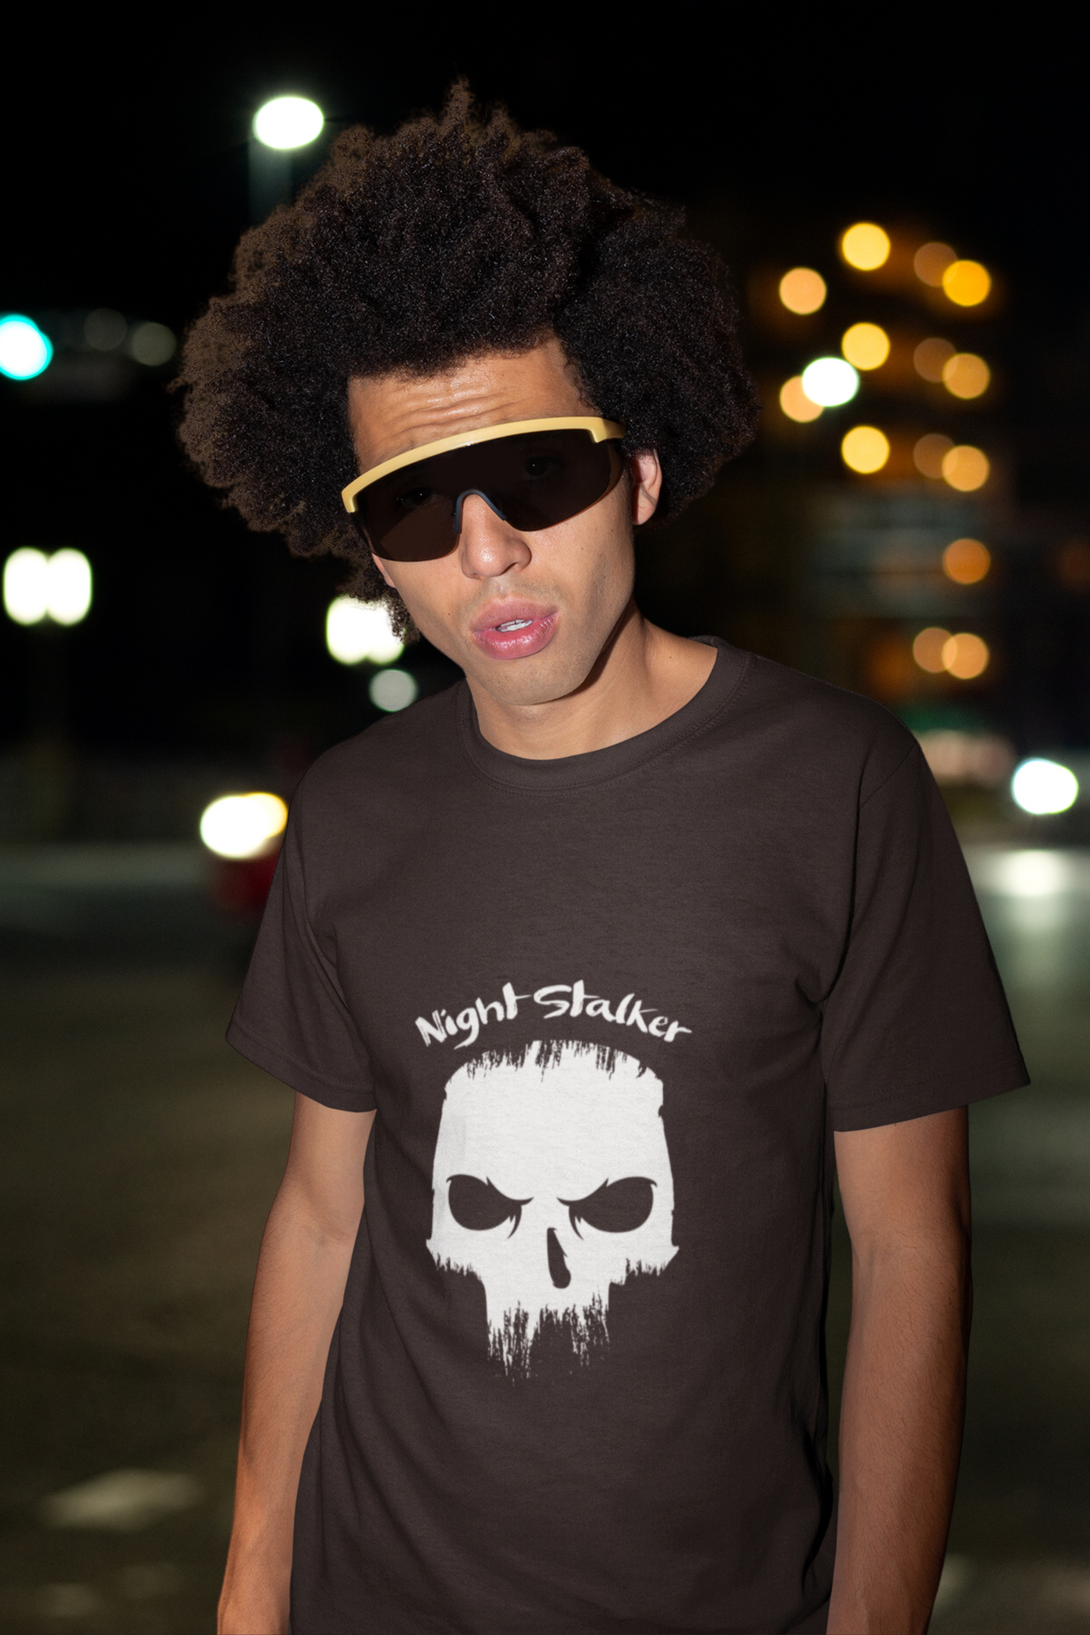 Skull Night Stalker Printed T Shirt For Men - WowWaves - 6